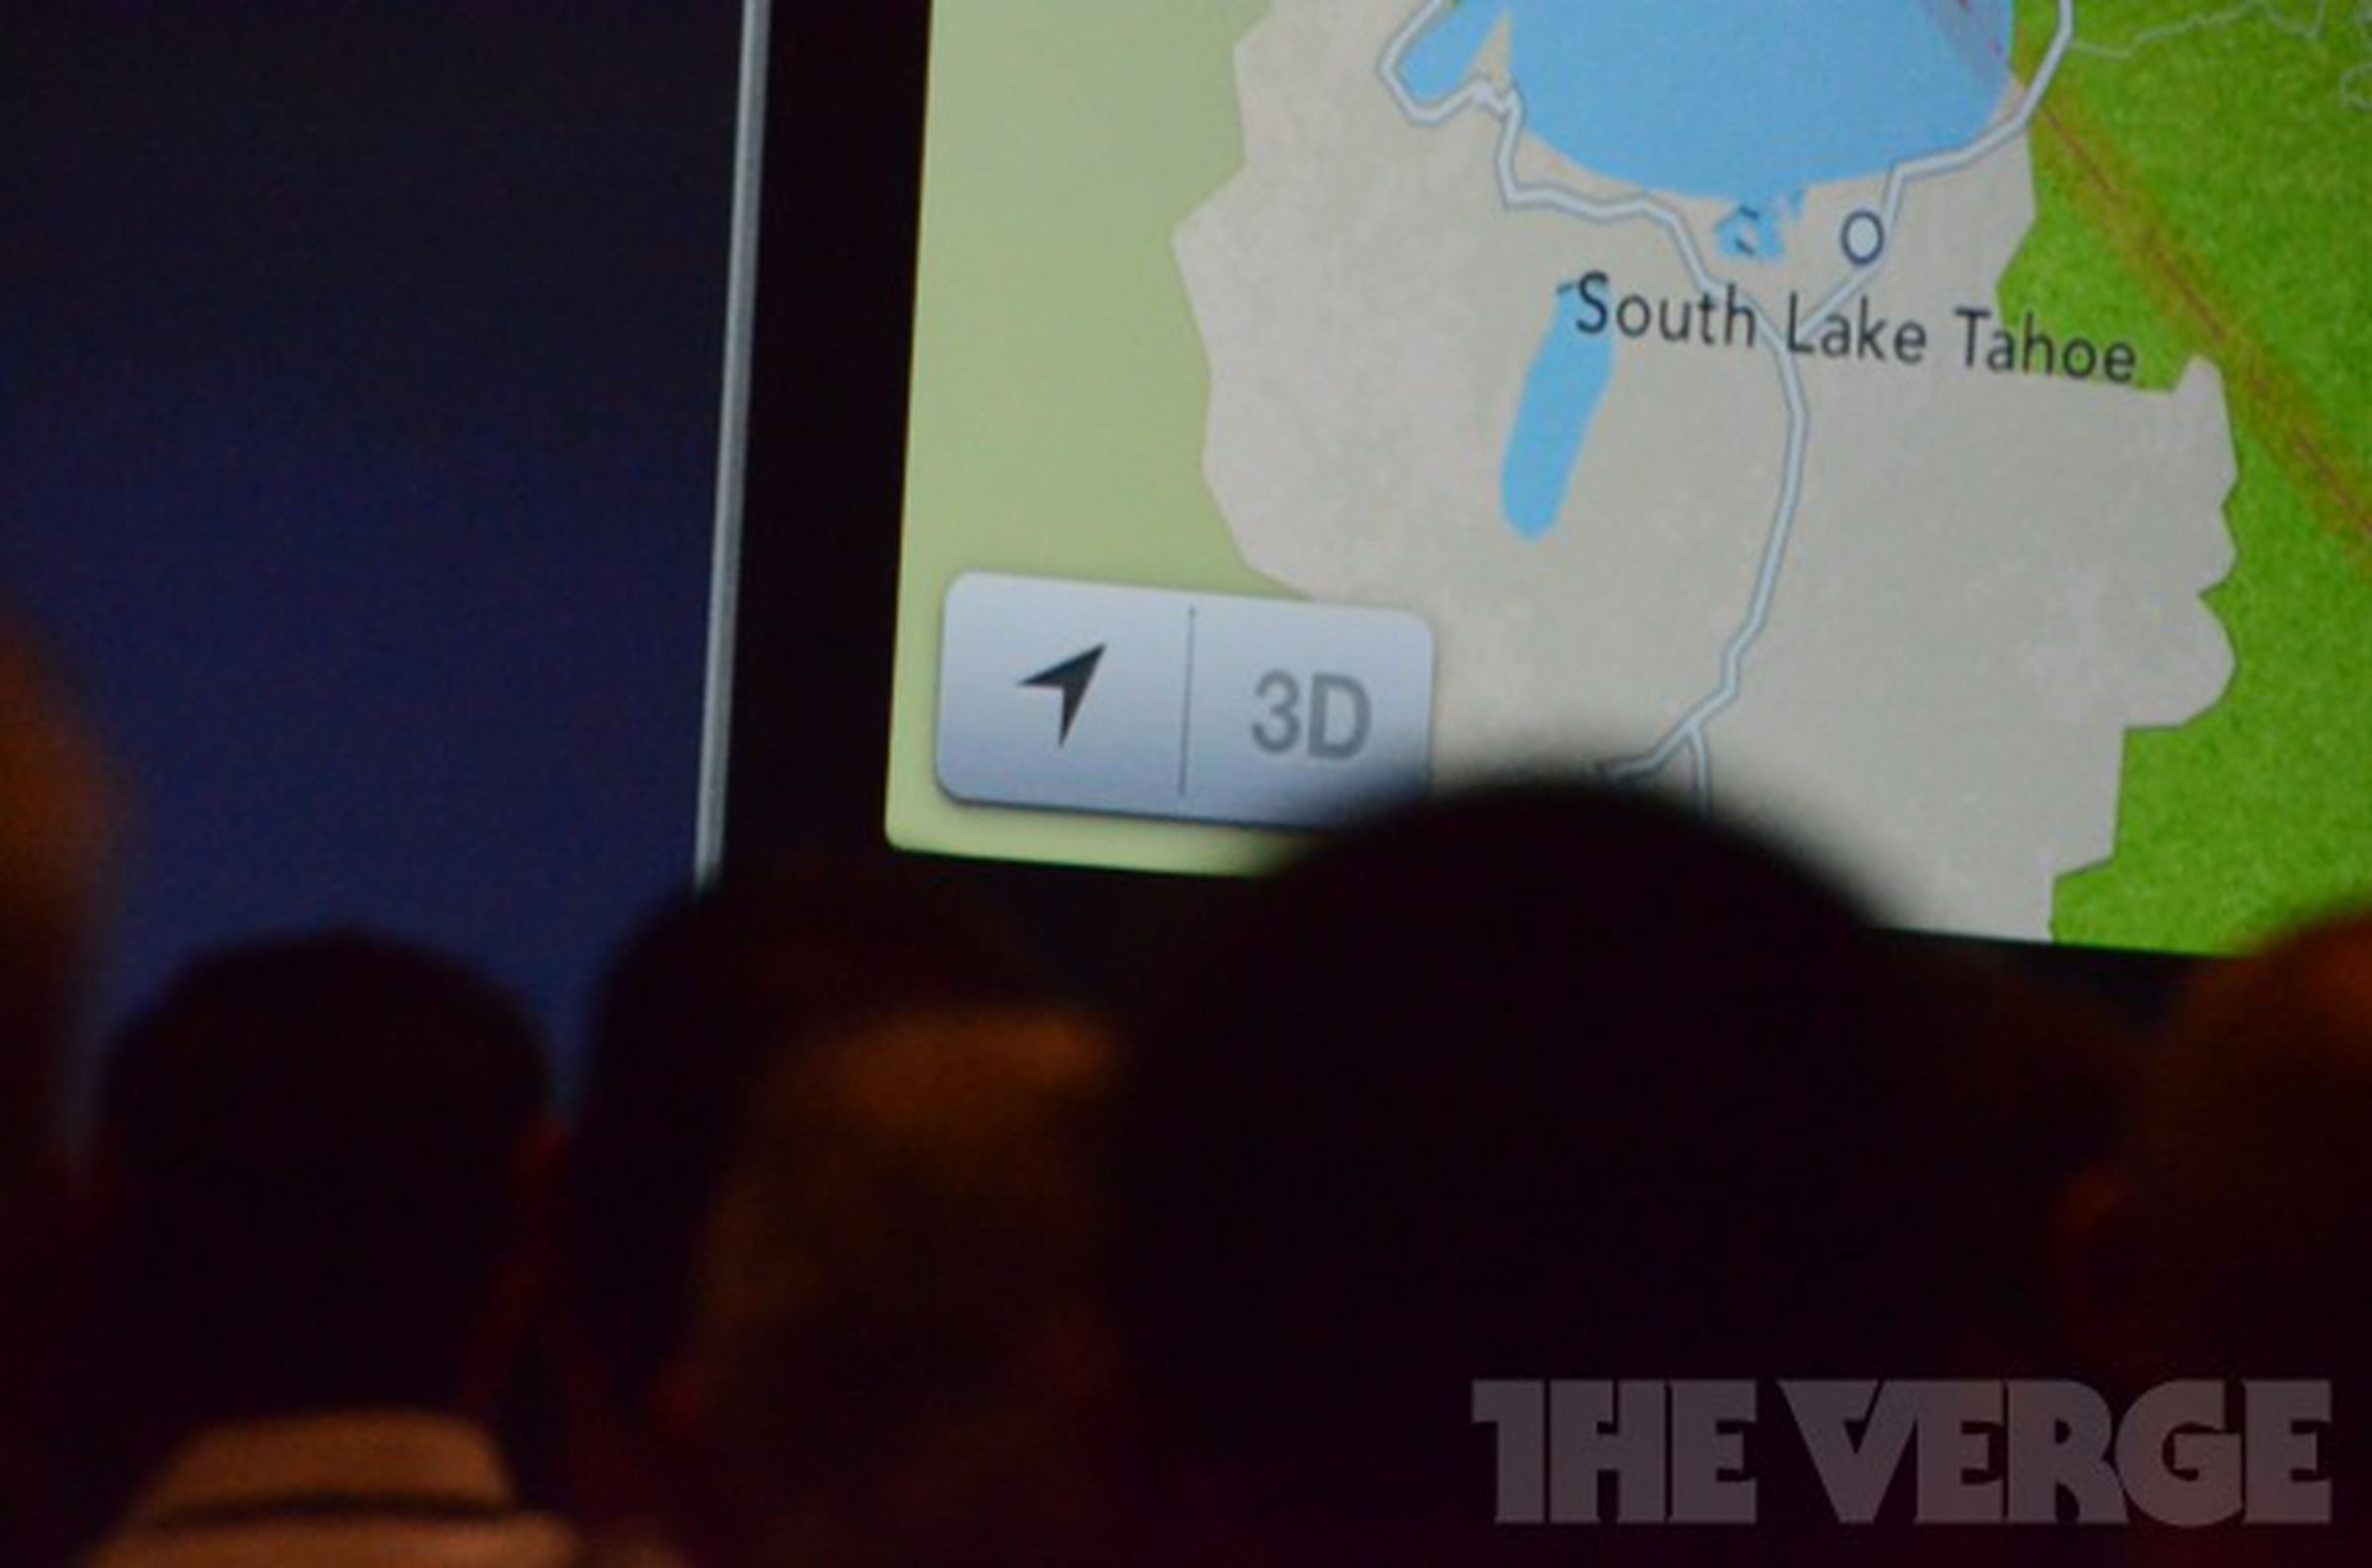 iOS 6 Maps liveblog photos